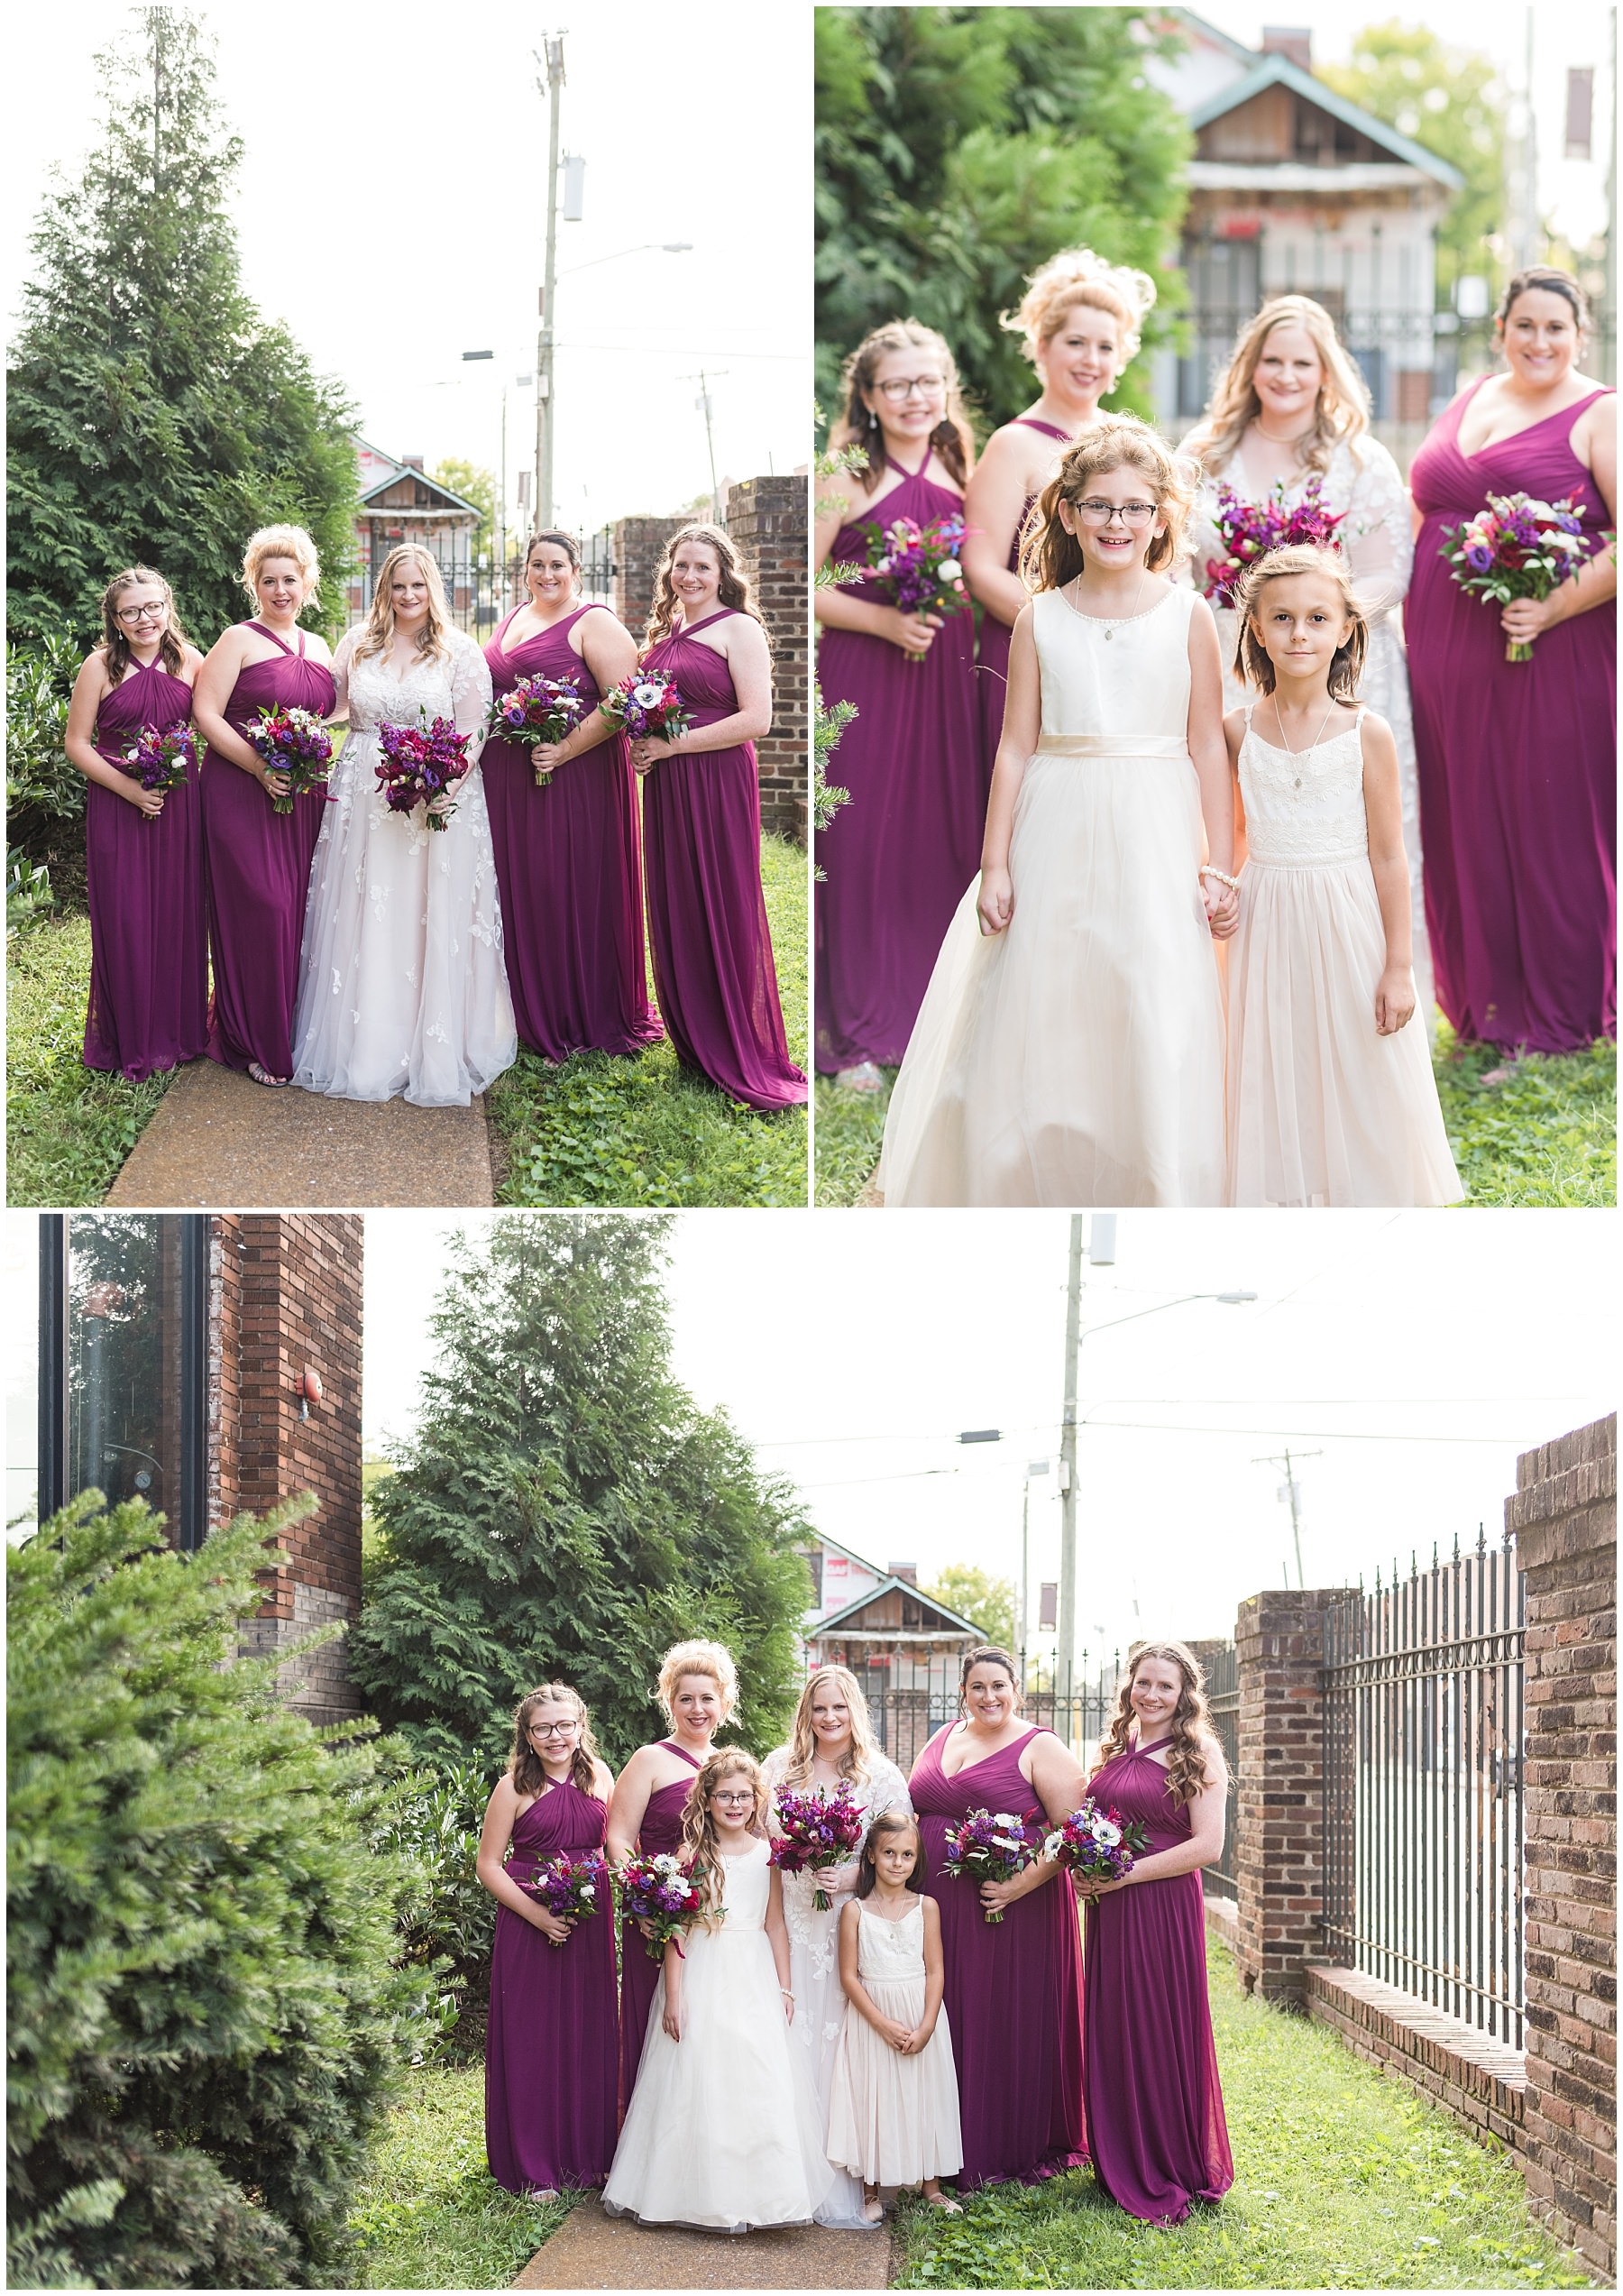 Bridal party photos at Marathon Village wedding in Nashville.